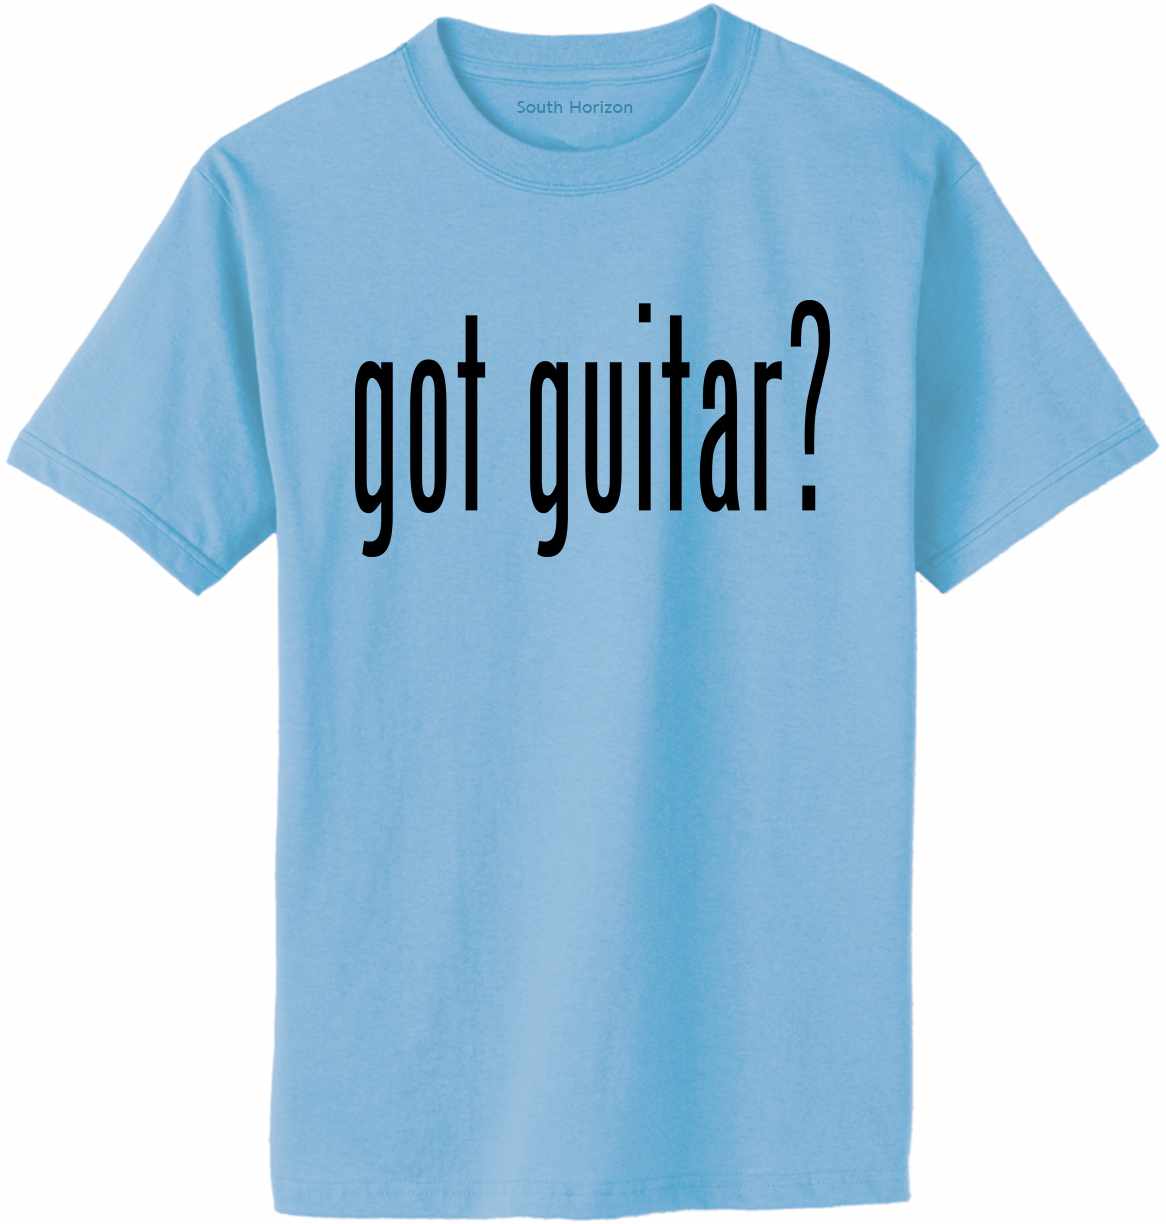 Got Guitar? Adult T-Shirt